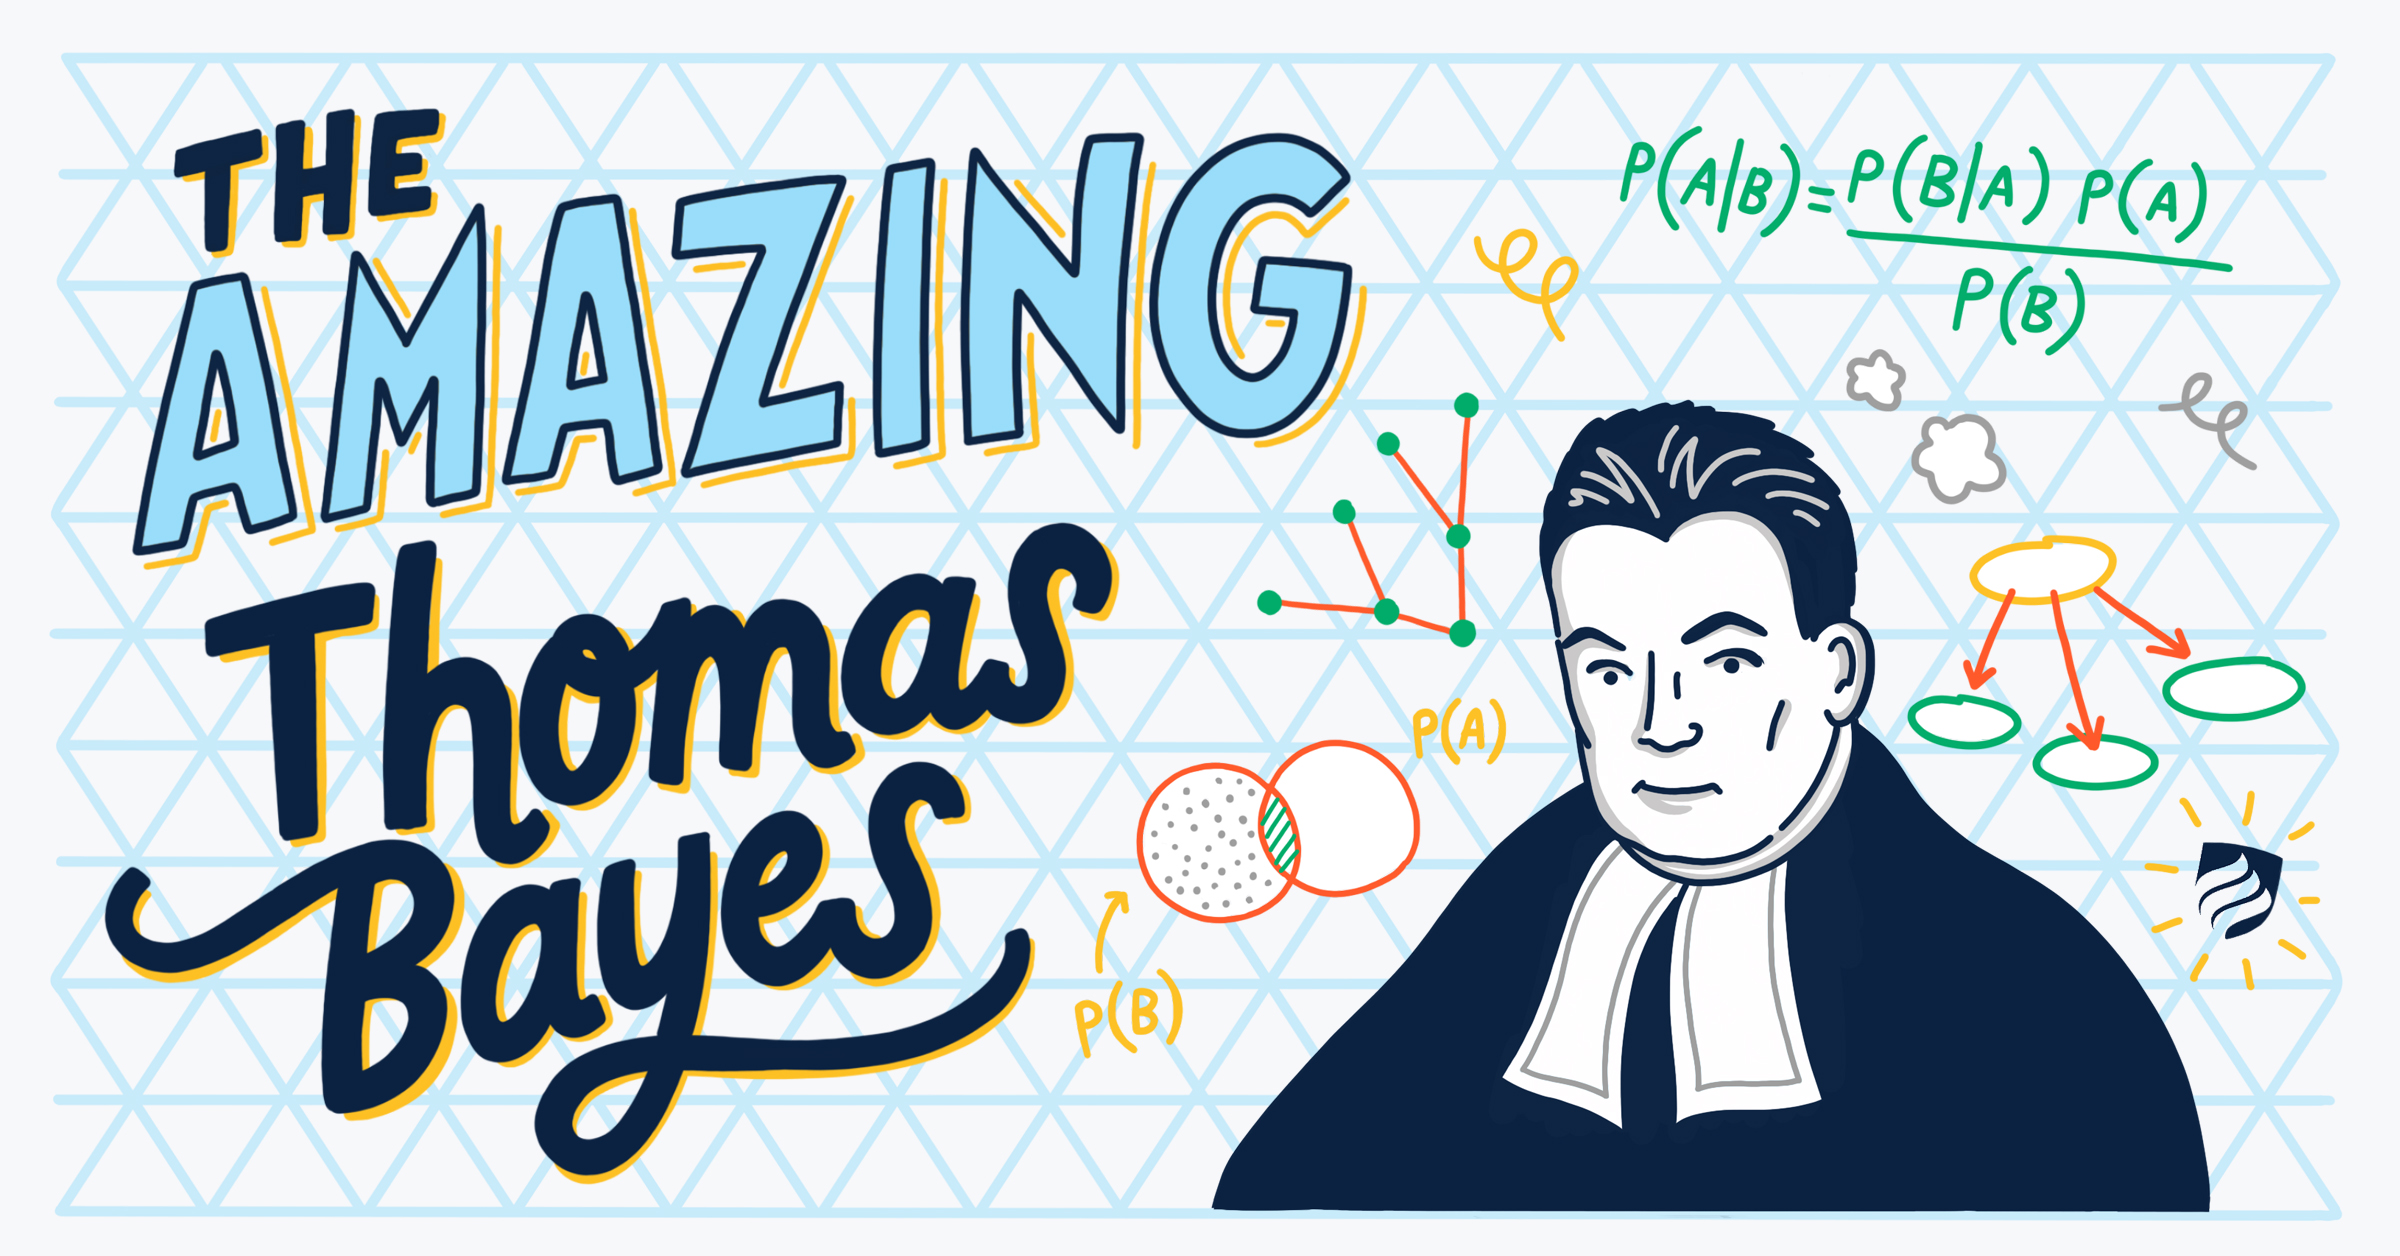 Cartoon of Thomas Bayes with Bayes' theorem in background. Source: [James Kulich](https://www.elmhurst.edu/blog/thomas-bayes/)